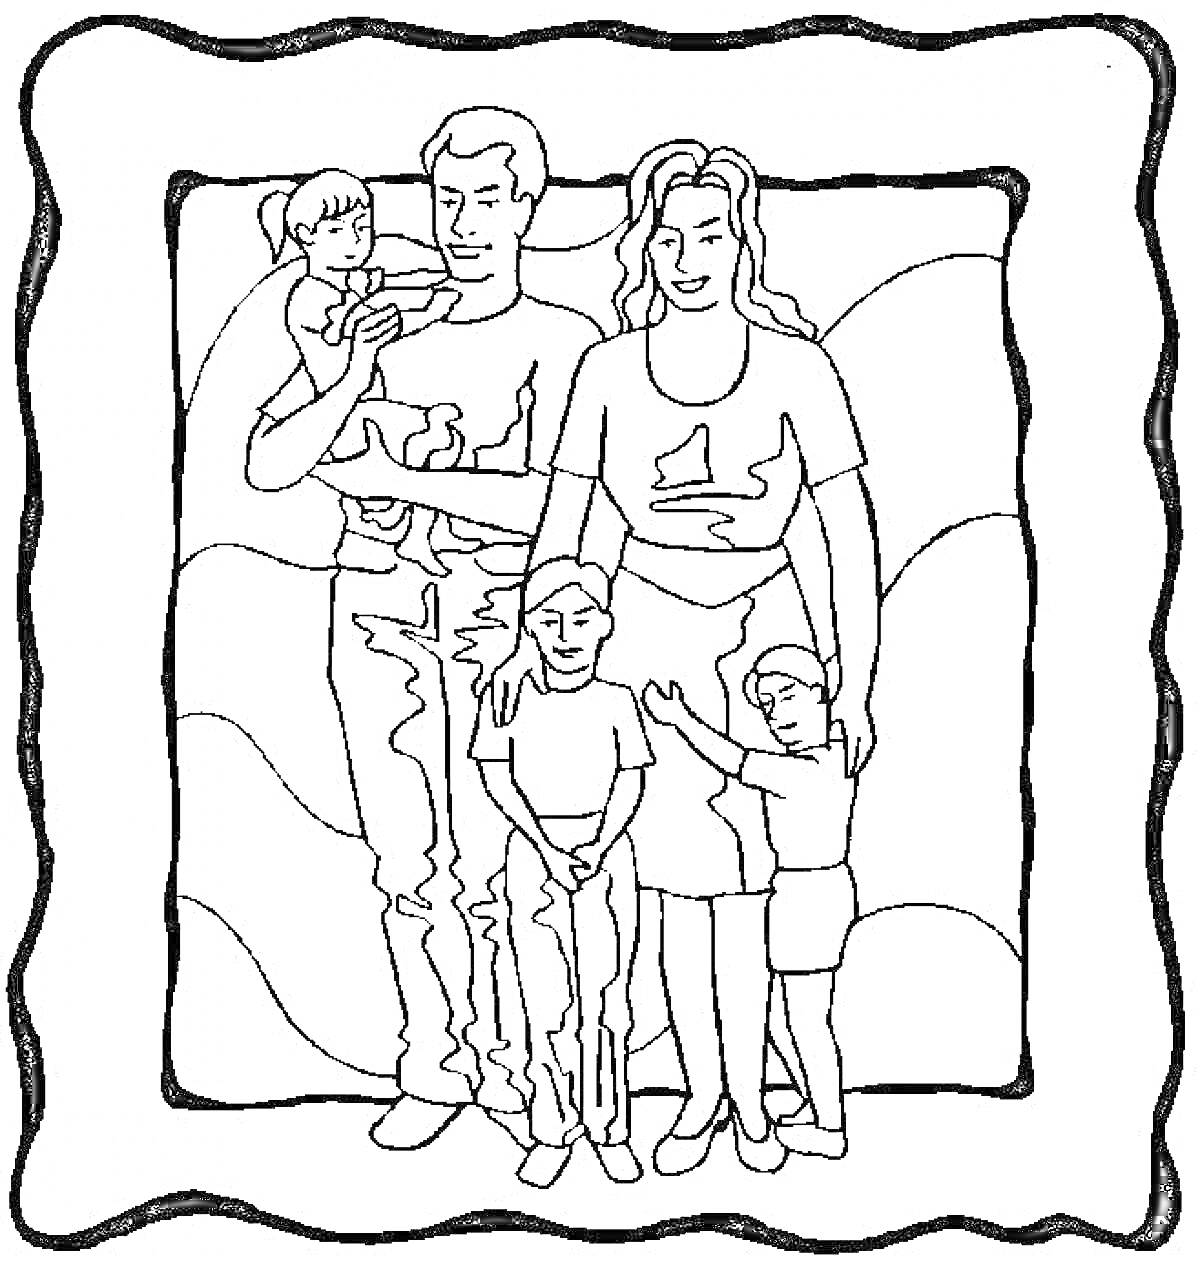 Раскраска Семейный портрет с пятью членами семьи, включая двух взрослых и троих детей в рамке